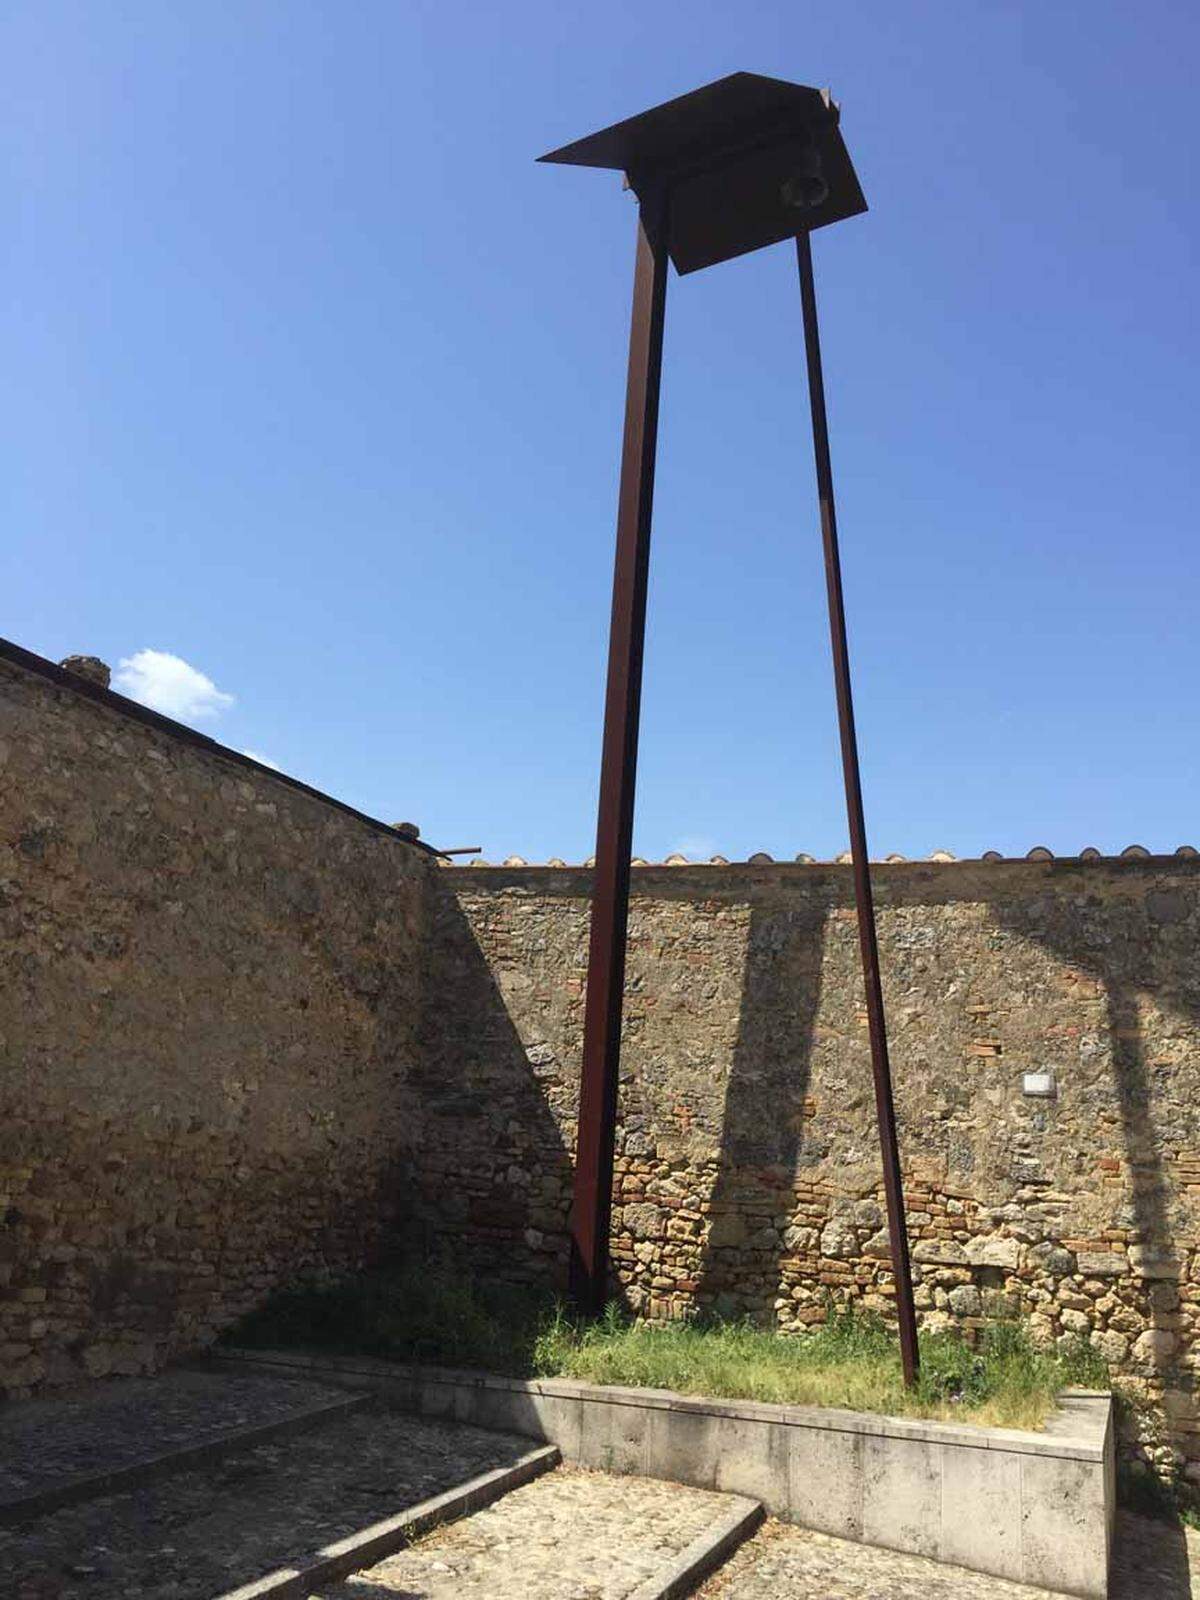 Im etwas überlaufenen San Gimignano in der Toscana ging Schaufenster-Chefredakteur Daniel Kalt auf die Suche nach Public-Art-Installationen der Galleria continua (hier eine Arbeit von Jannis Kounellis, via Instagram.com/daniel_kalt) ...